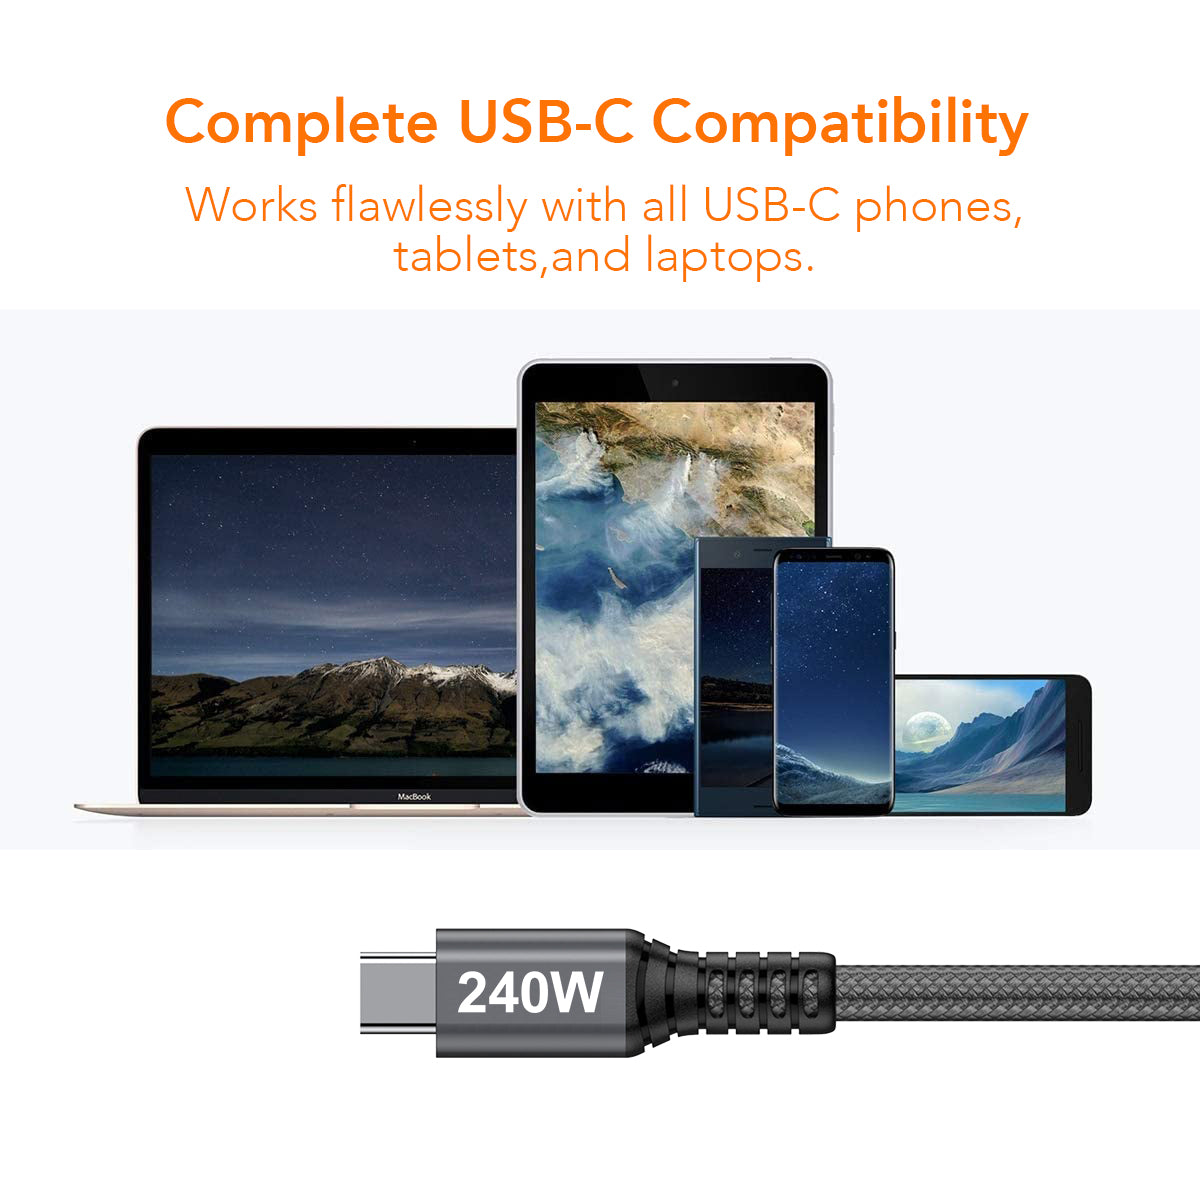 Câble certifié USB-IF bidirectionnel USB2 Gen2 Type-C, données 480 Mbps, PD 240W (48V/5A) 1m / 3.28ft